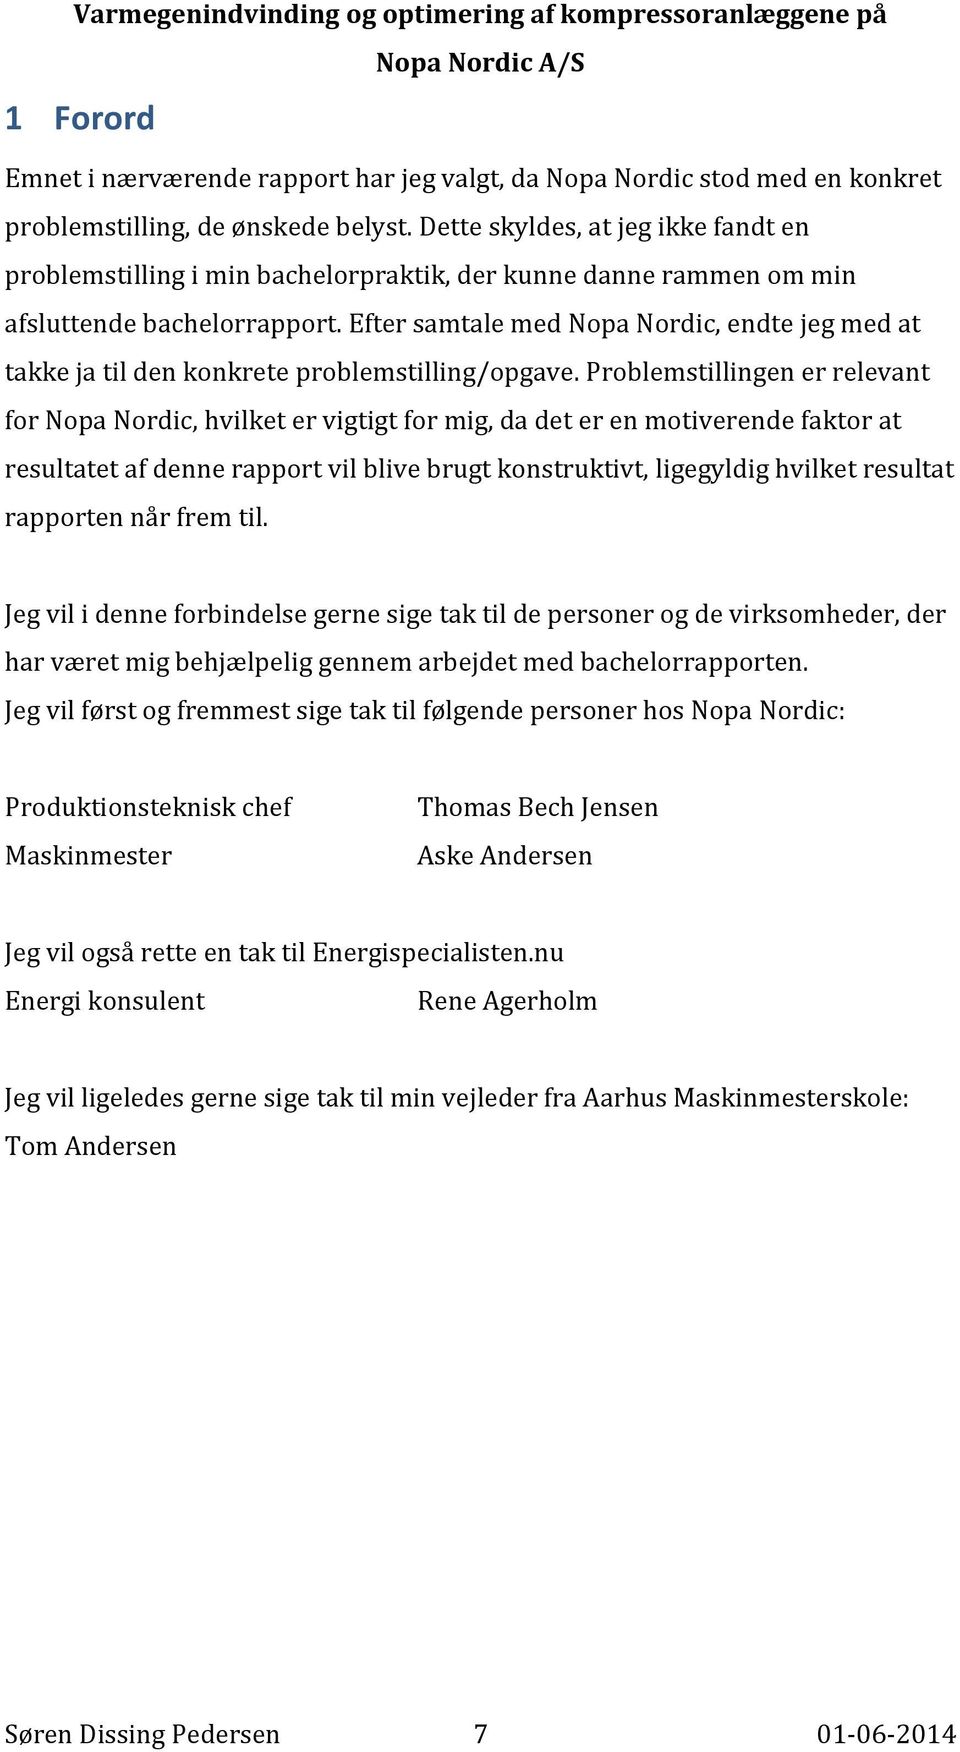 Efter samtale med Nopa Nordic, endte jeg med at takke ja til den konkrete problemstilling/opgave.